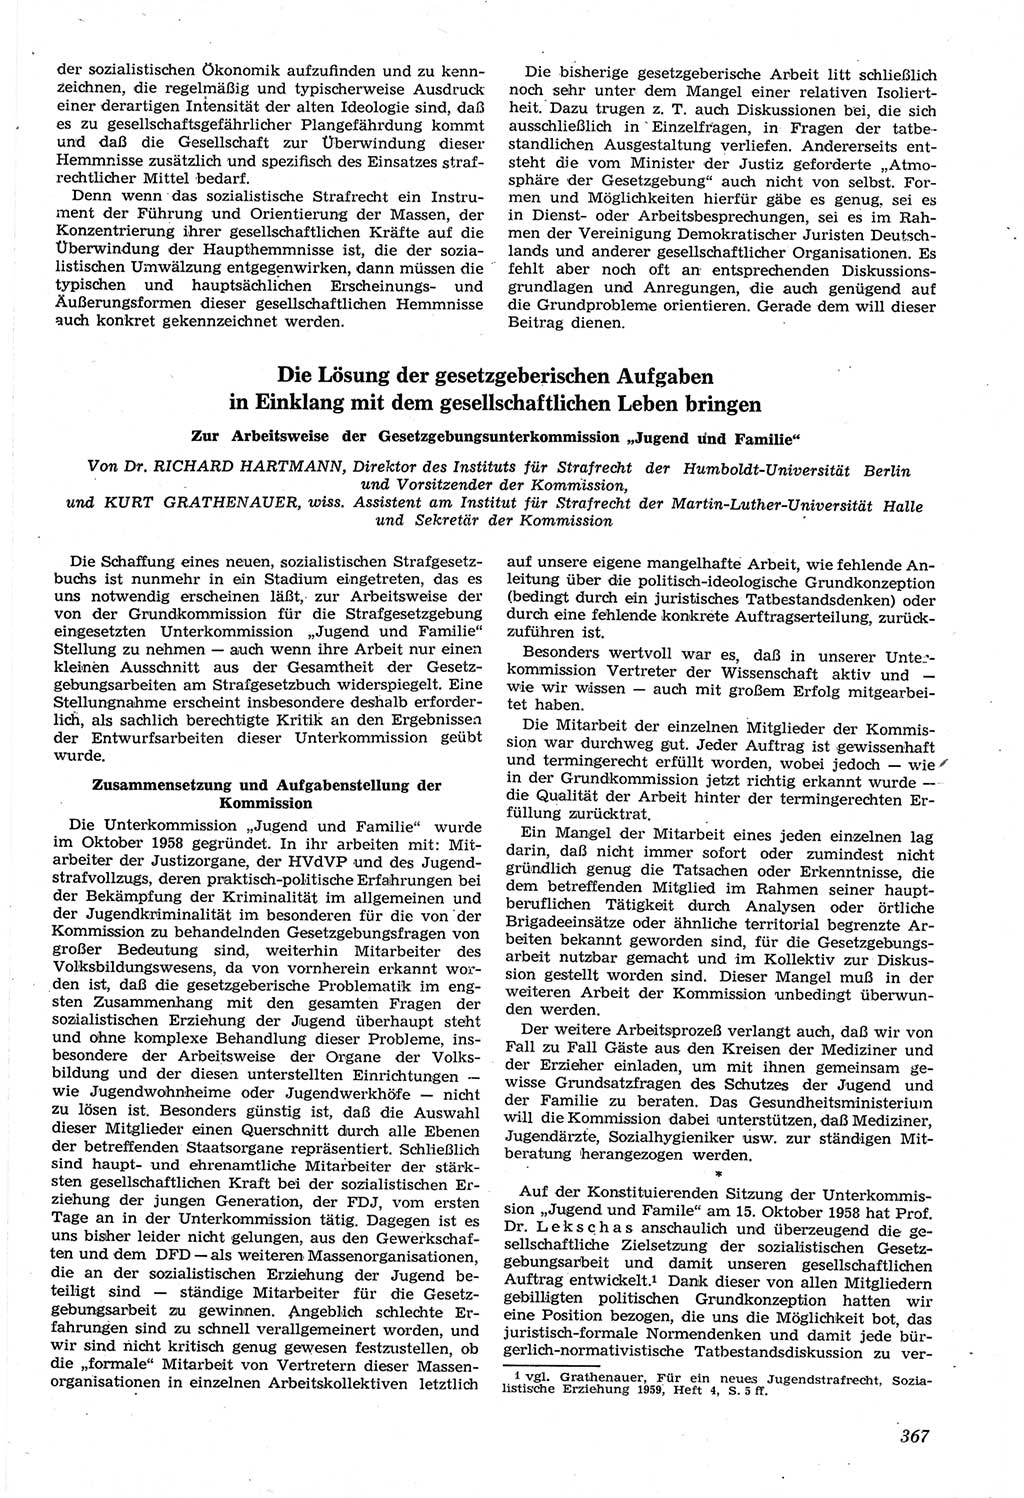 Neue Justiz (NJ), Zeitschrift für Recht und Rechtswissenschaft [Deutsche Demokratische Republik (DDR)], 14. Jahrgang 1960, Seite 367 (NJ DDR 1960, S. 367)